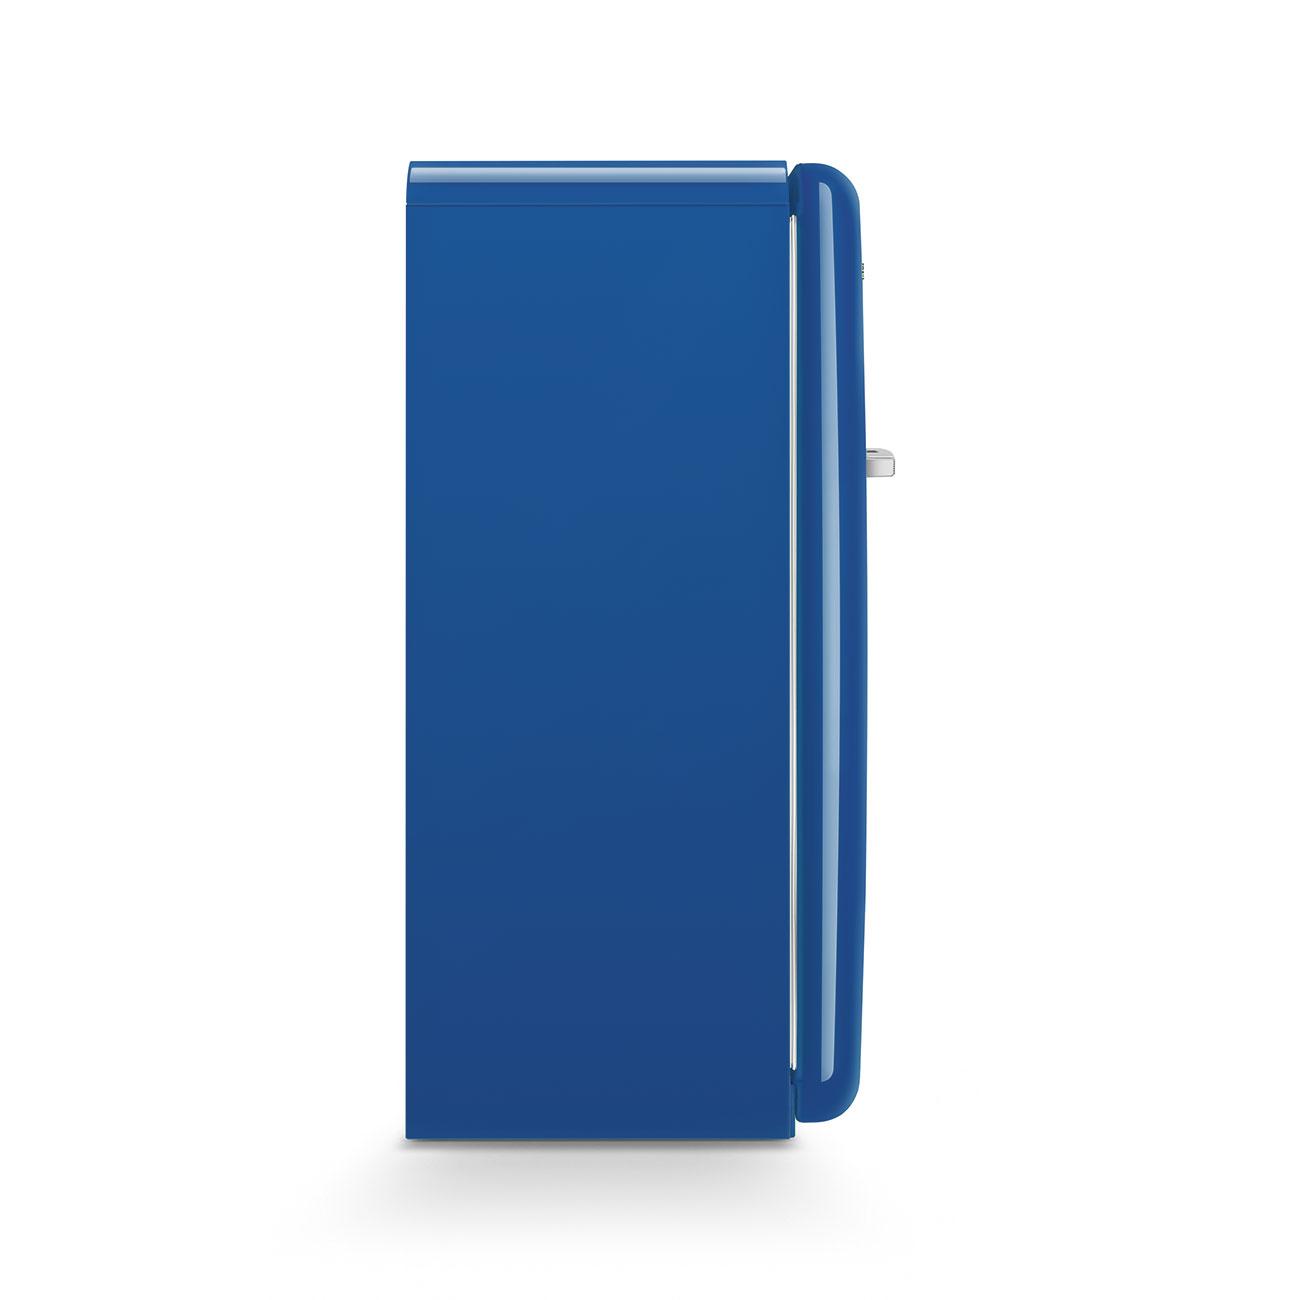 Blue refrigerator - Smeg_8